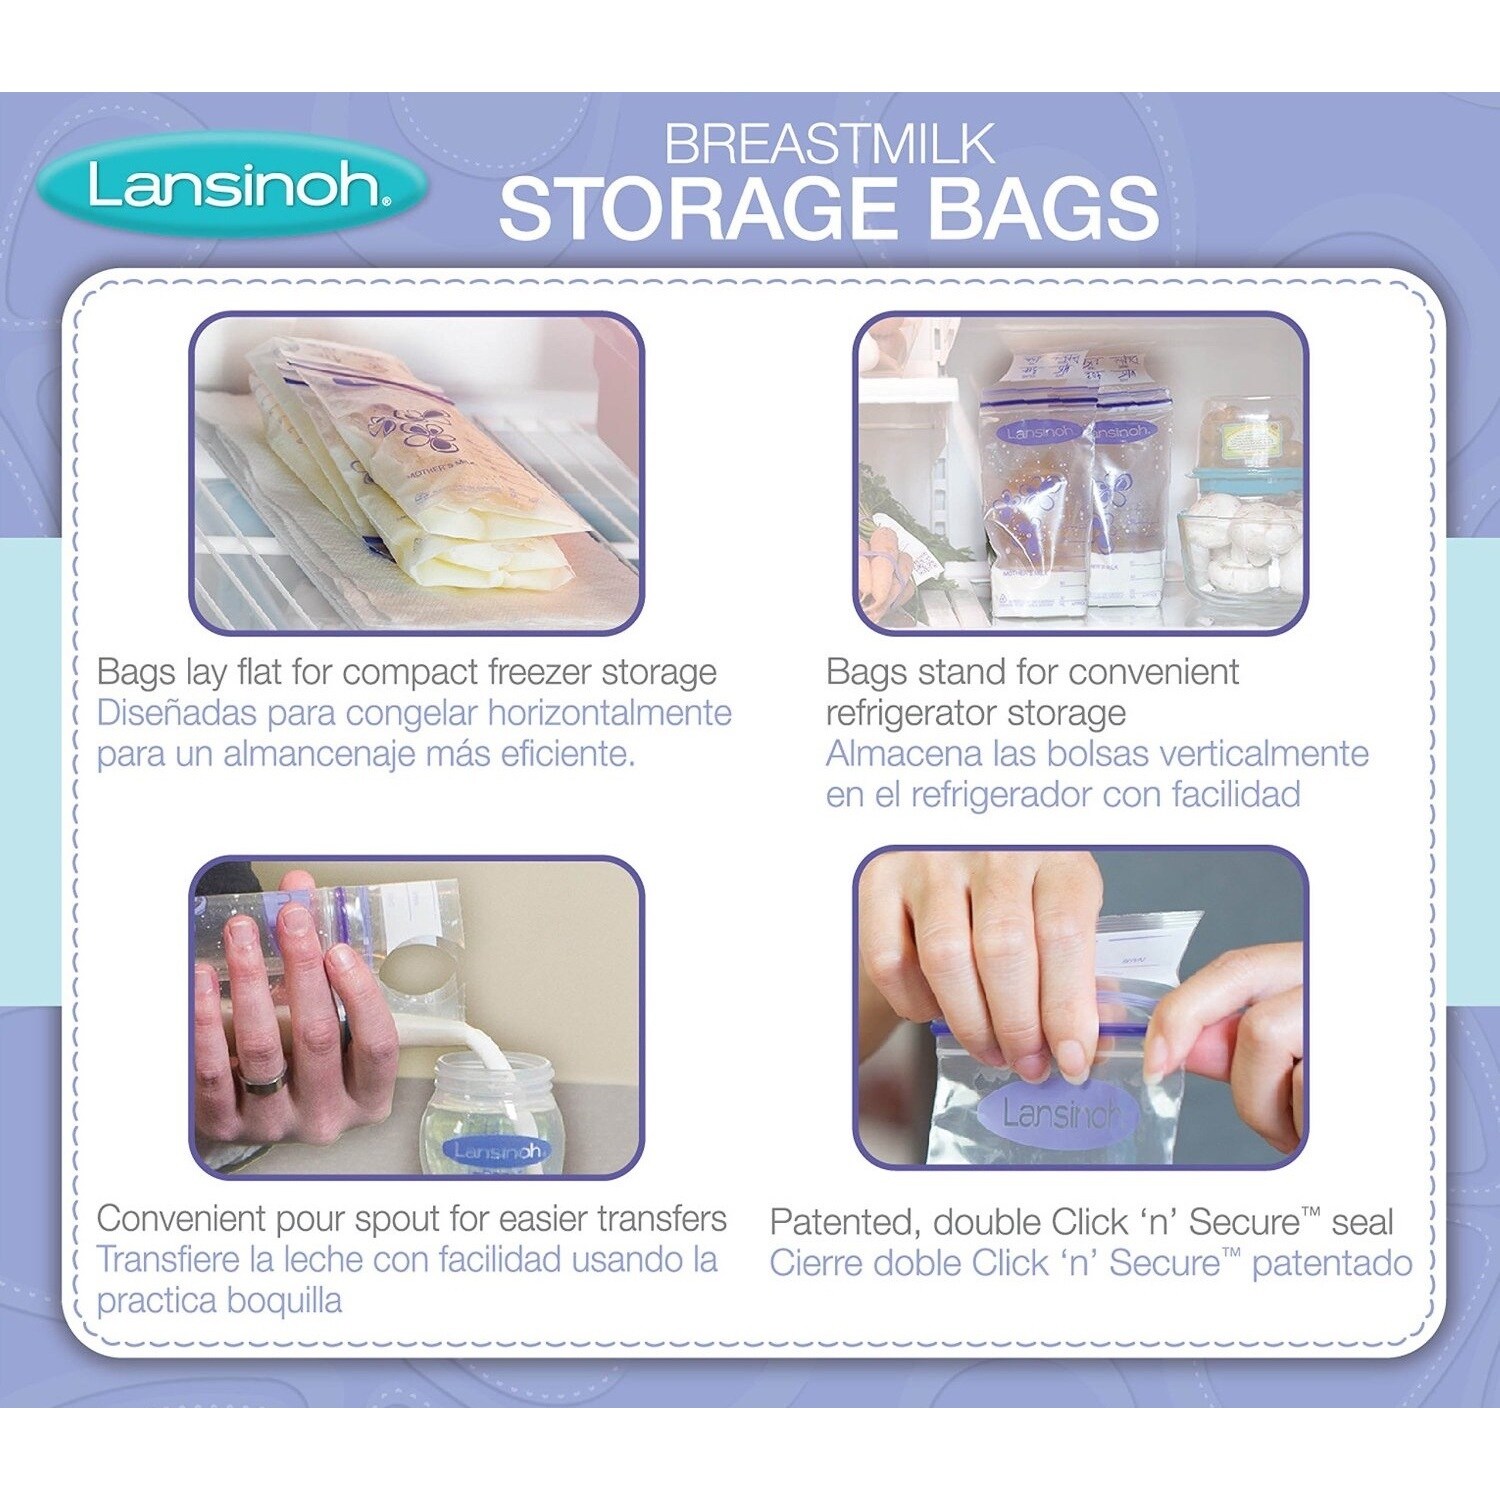 lansinoh milk storage bags 100